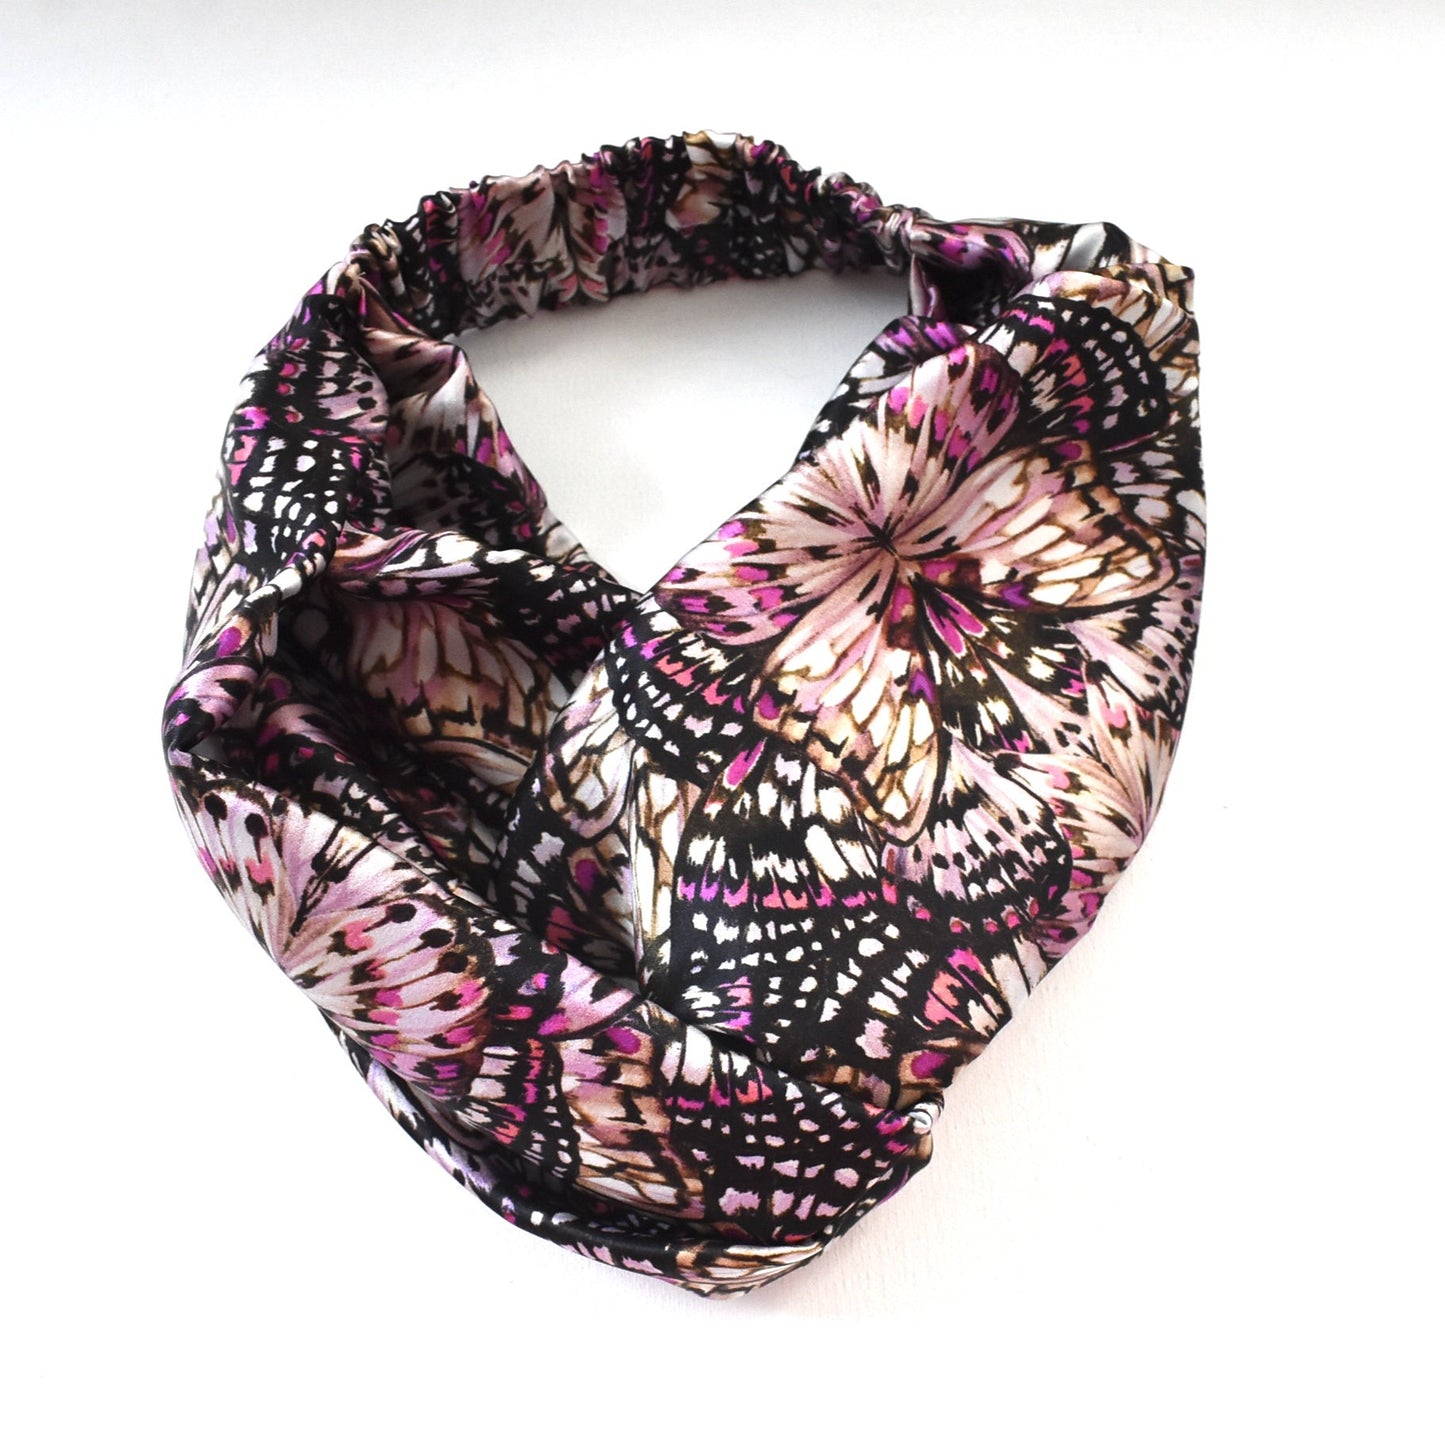 Silk Twisted Turban hairband in Liberty of London Kaleidoscope in Pink Silk Satin - 100% silk